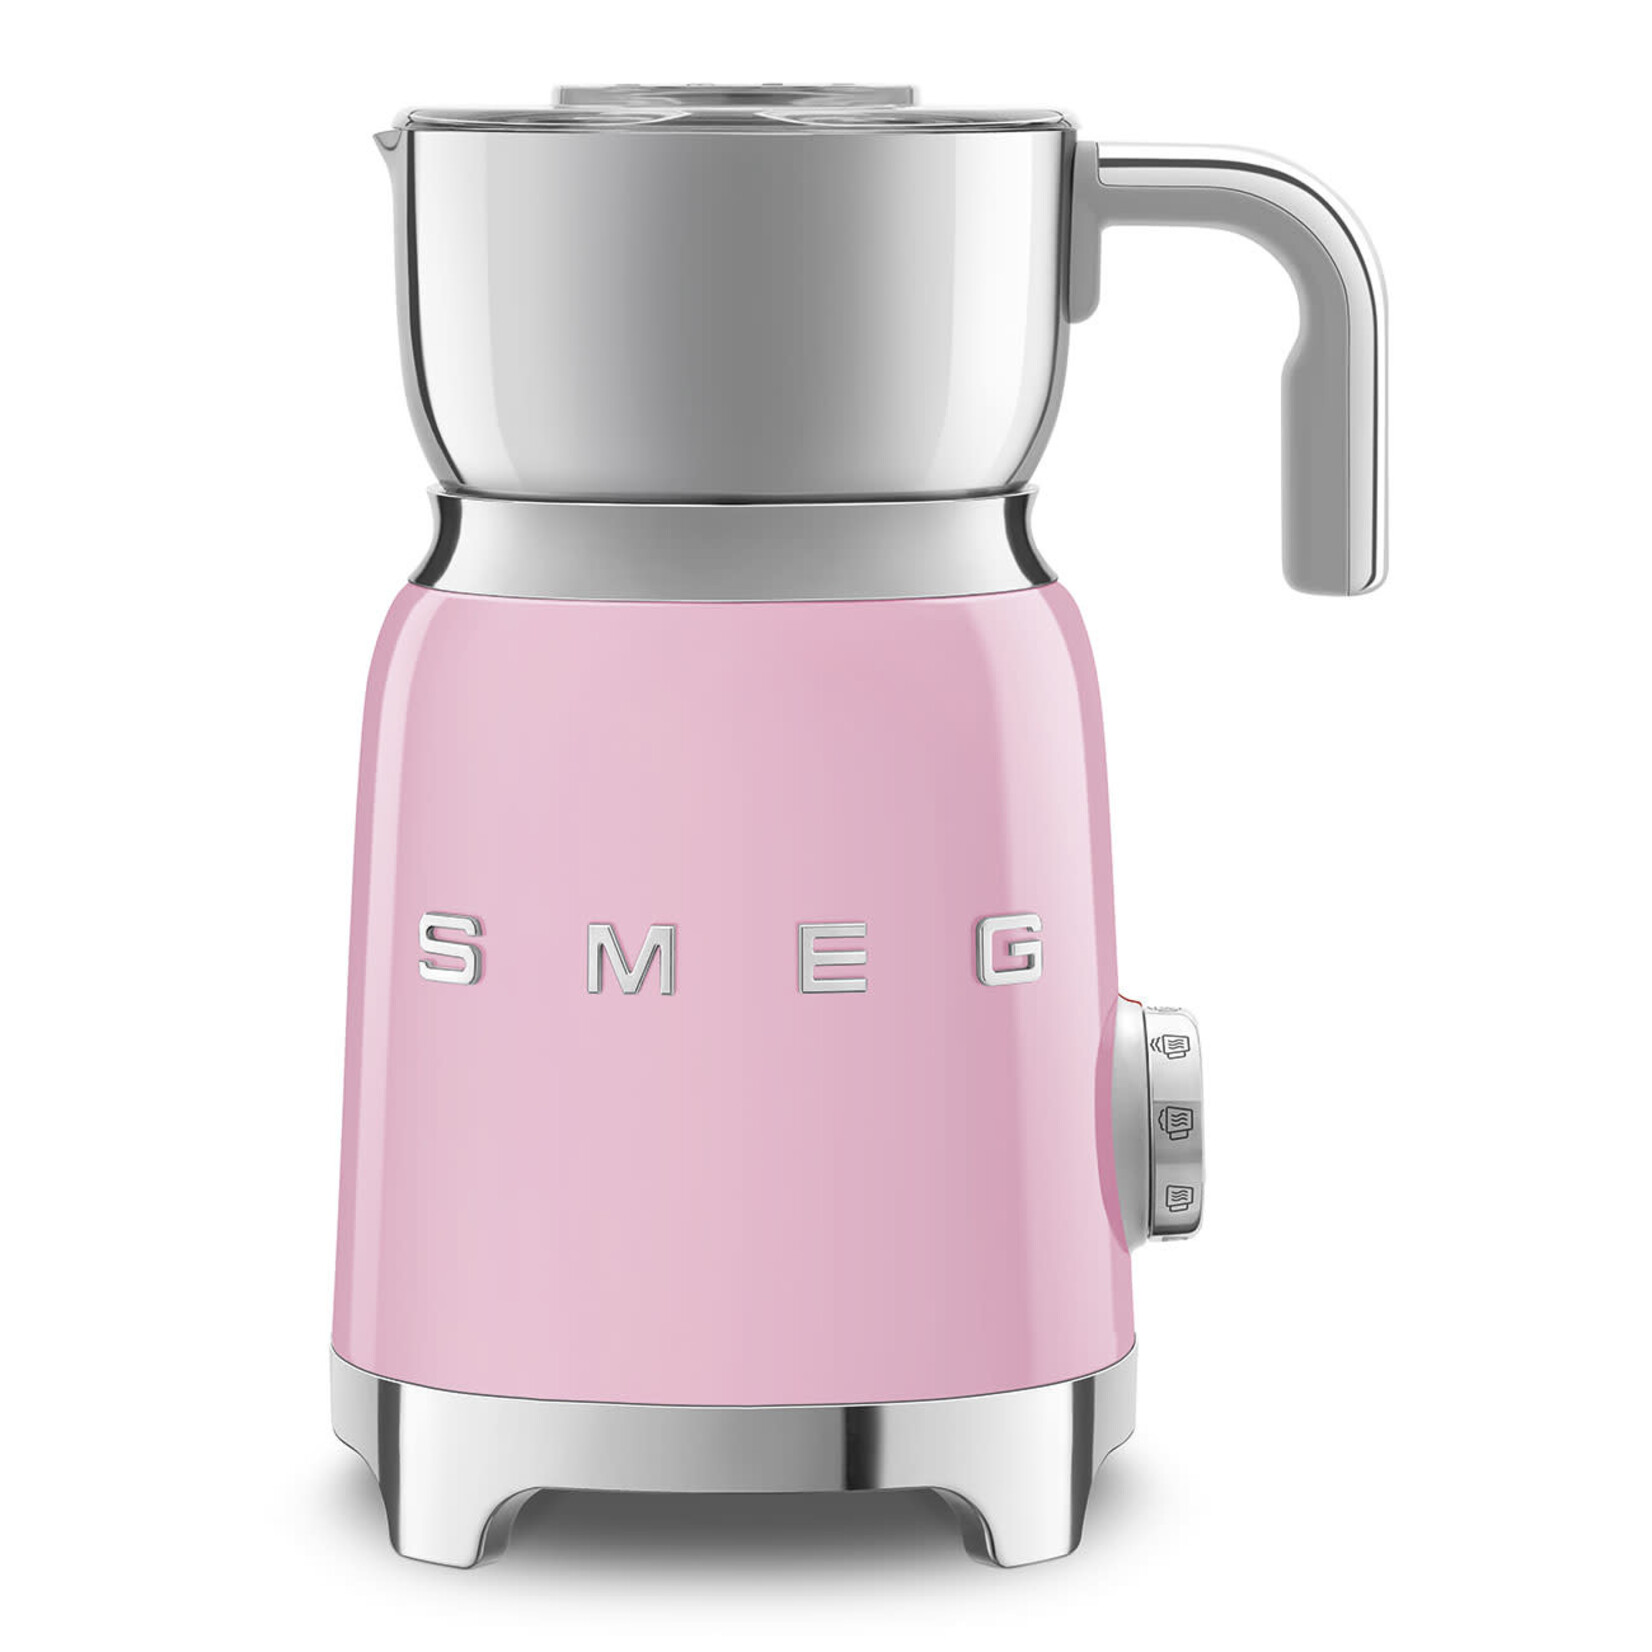 SMEG SMEG 50's Retro Style Aesthetic Milk Frother